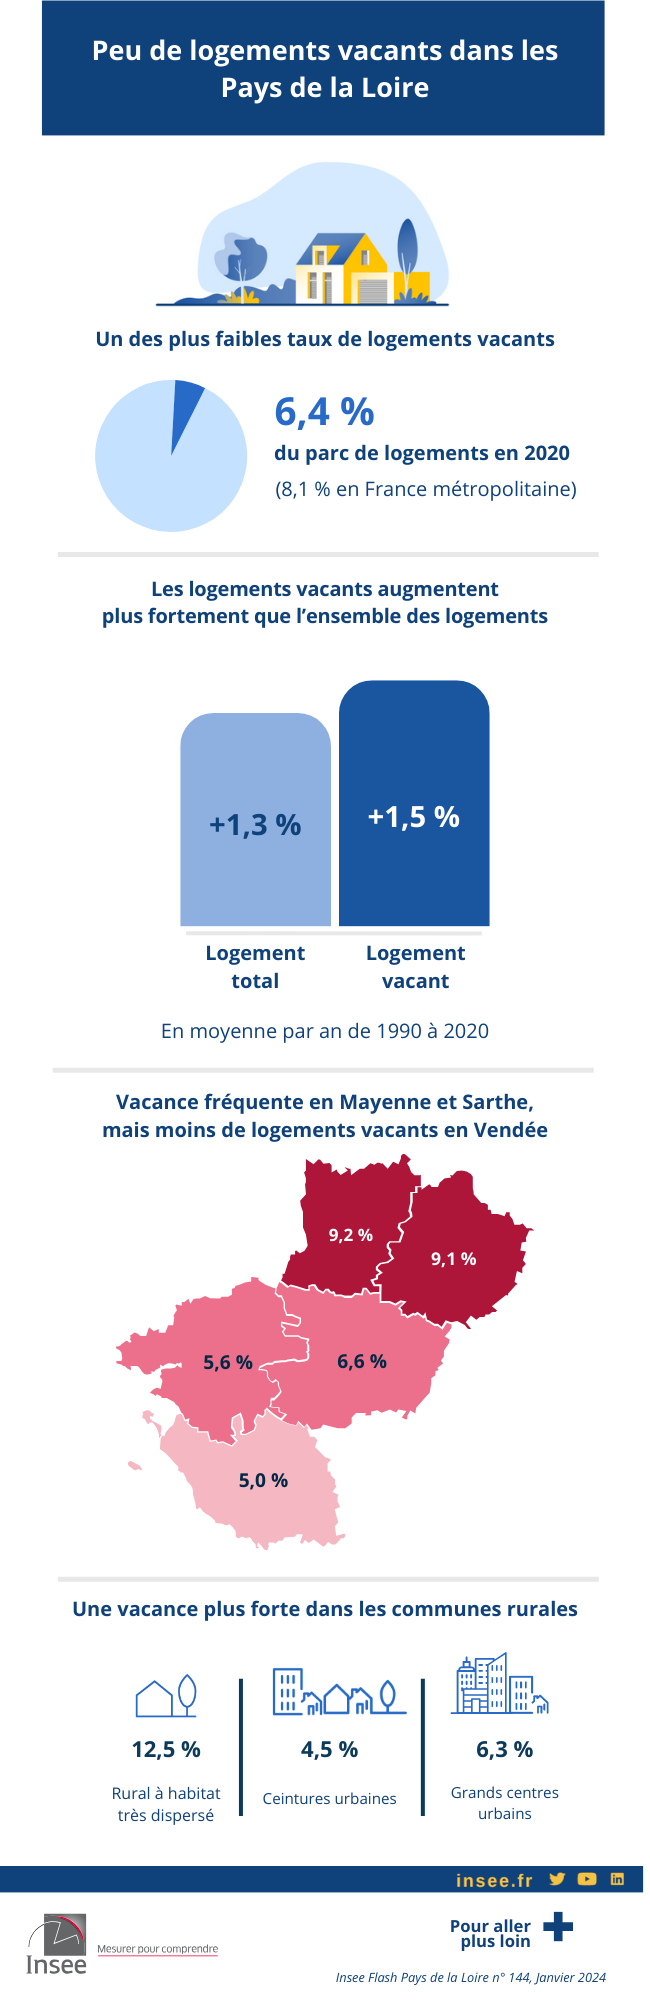 Peu de logements vacants dans les Pays de la Loire